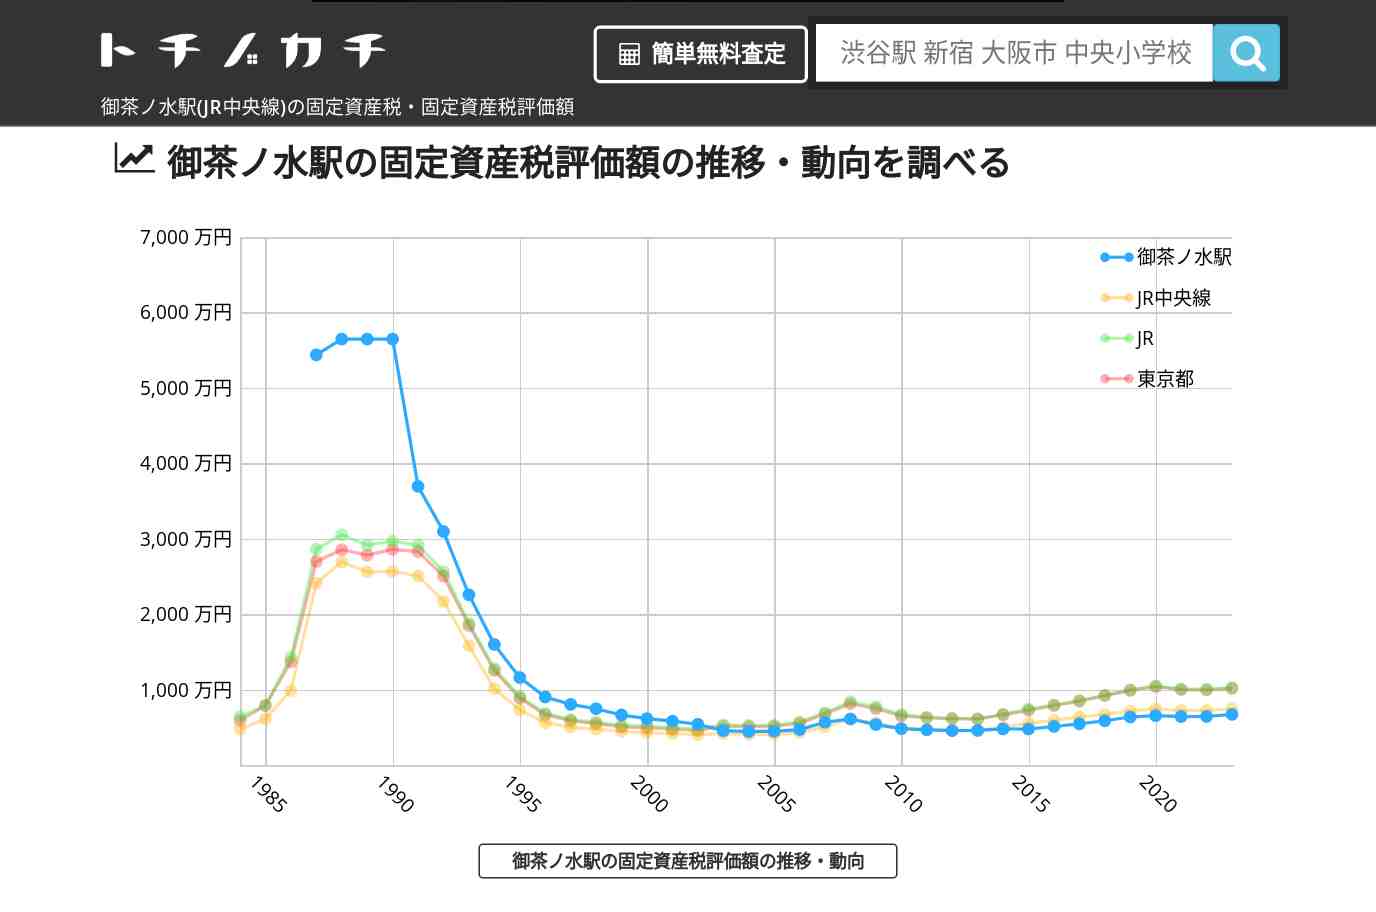 御茶ノ水駅(JR中央線)の固定資産税・固定資産税評価額 | トチノカチ